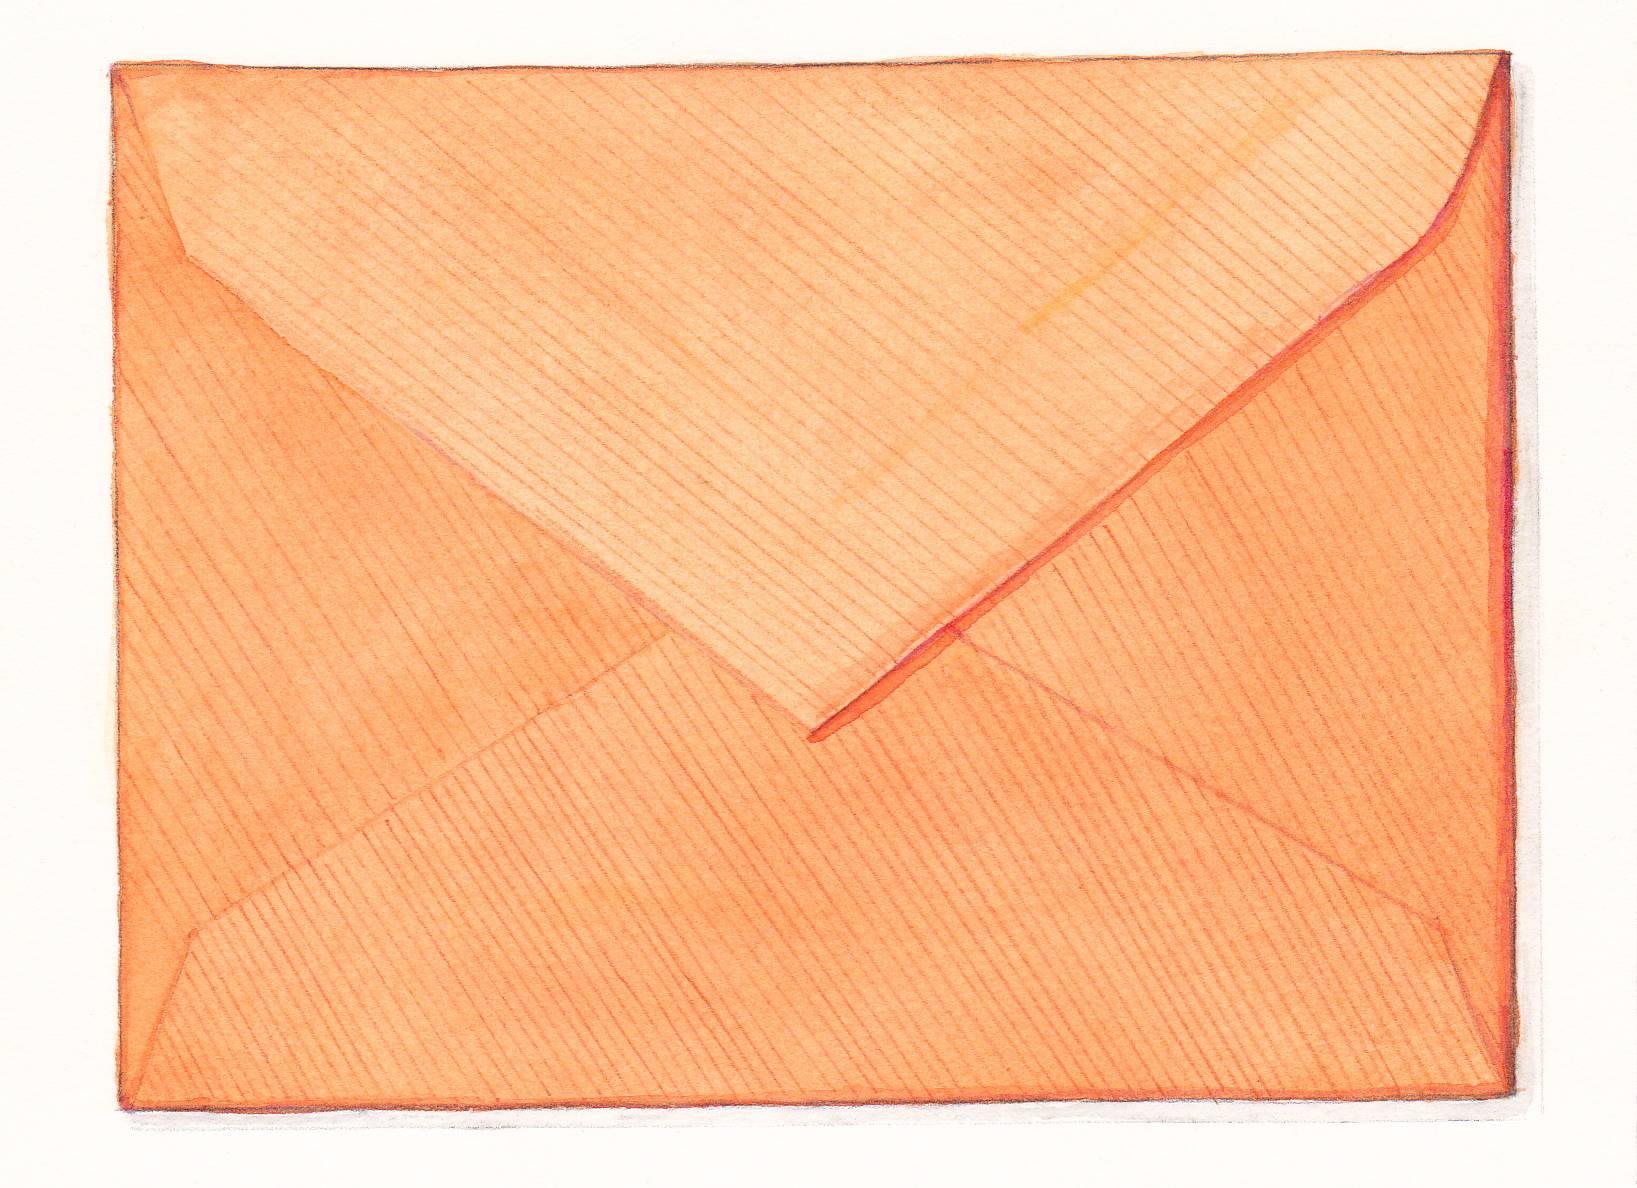 Still-Life Margot Glass - Envelope orange, aquarelle et nature morte réaliste au crayon, 2016